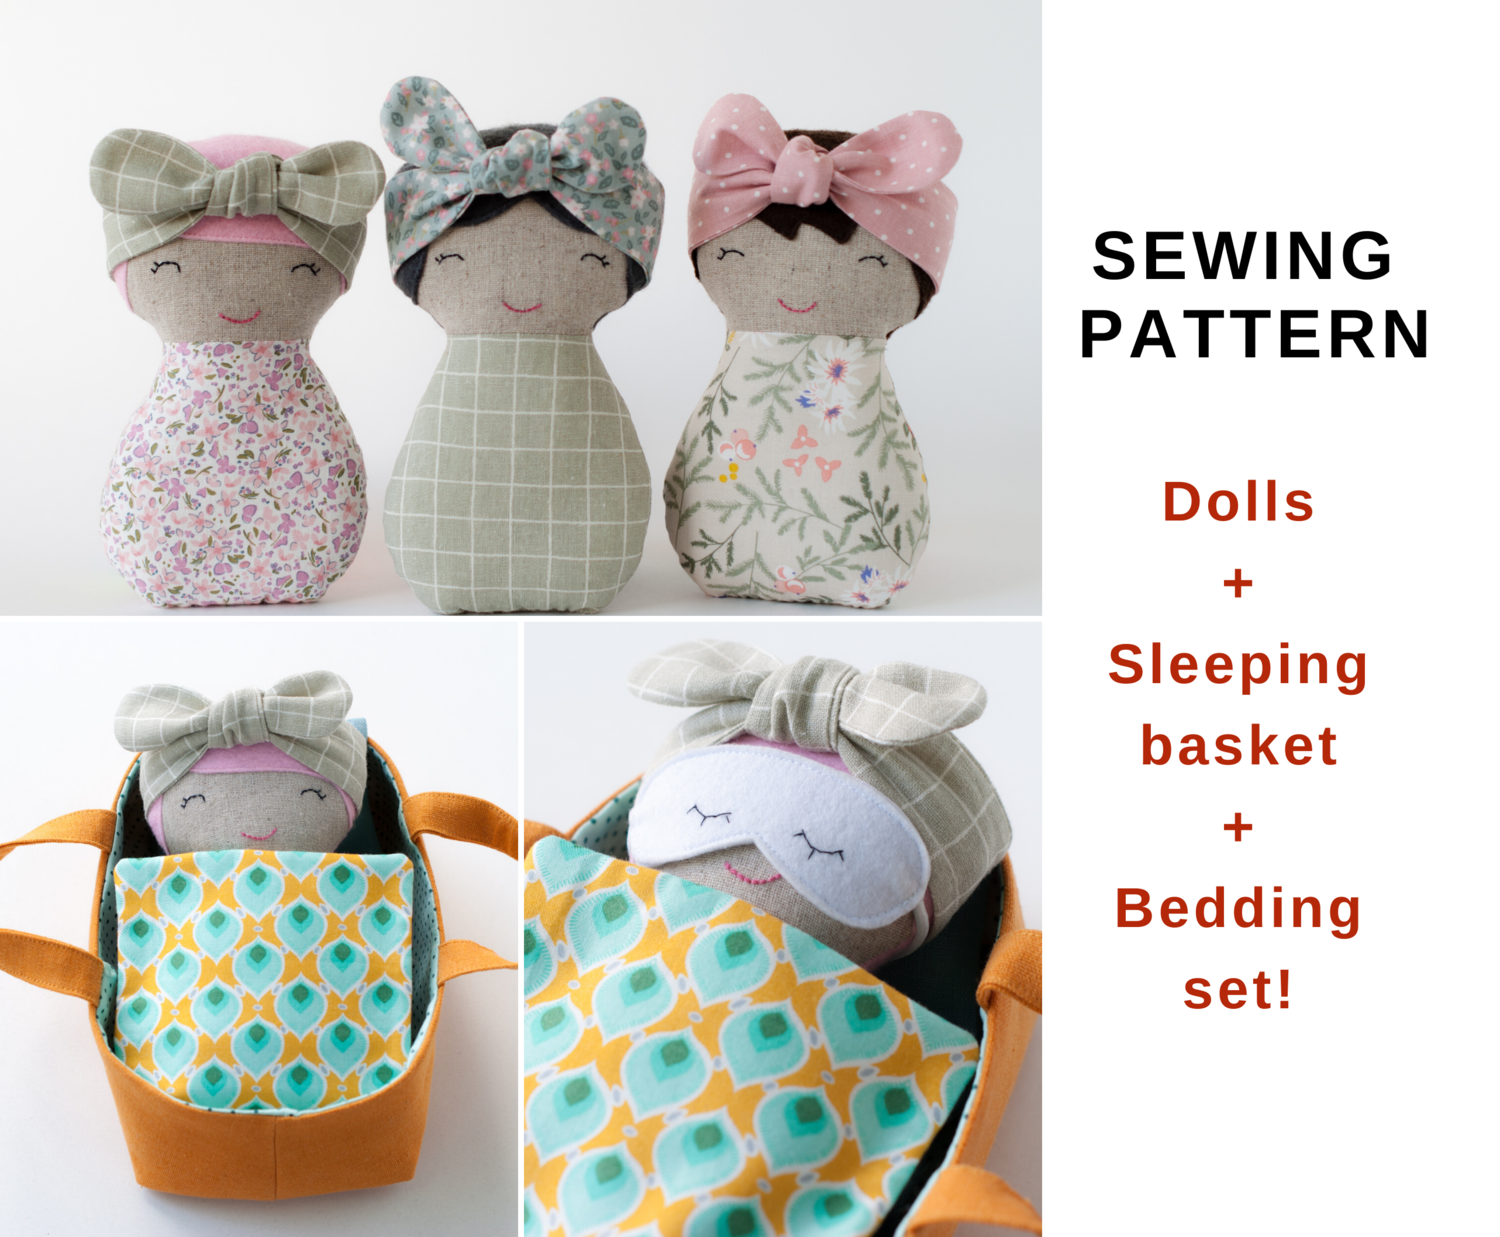 Doll+Sleeping basket. Sewing pattern PDF